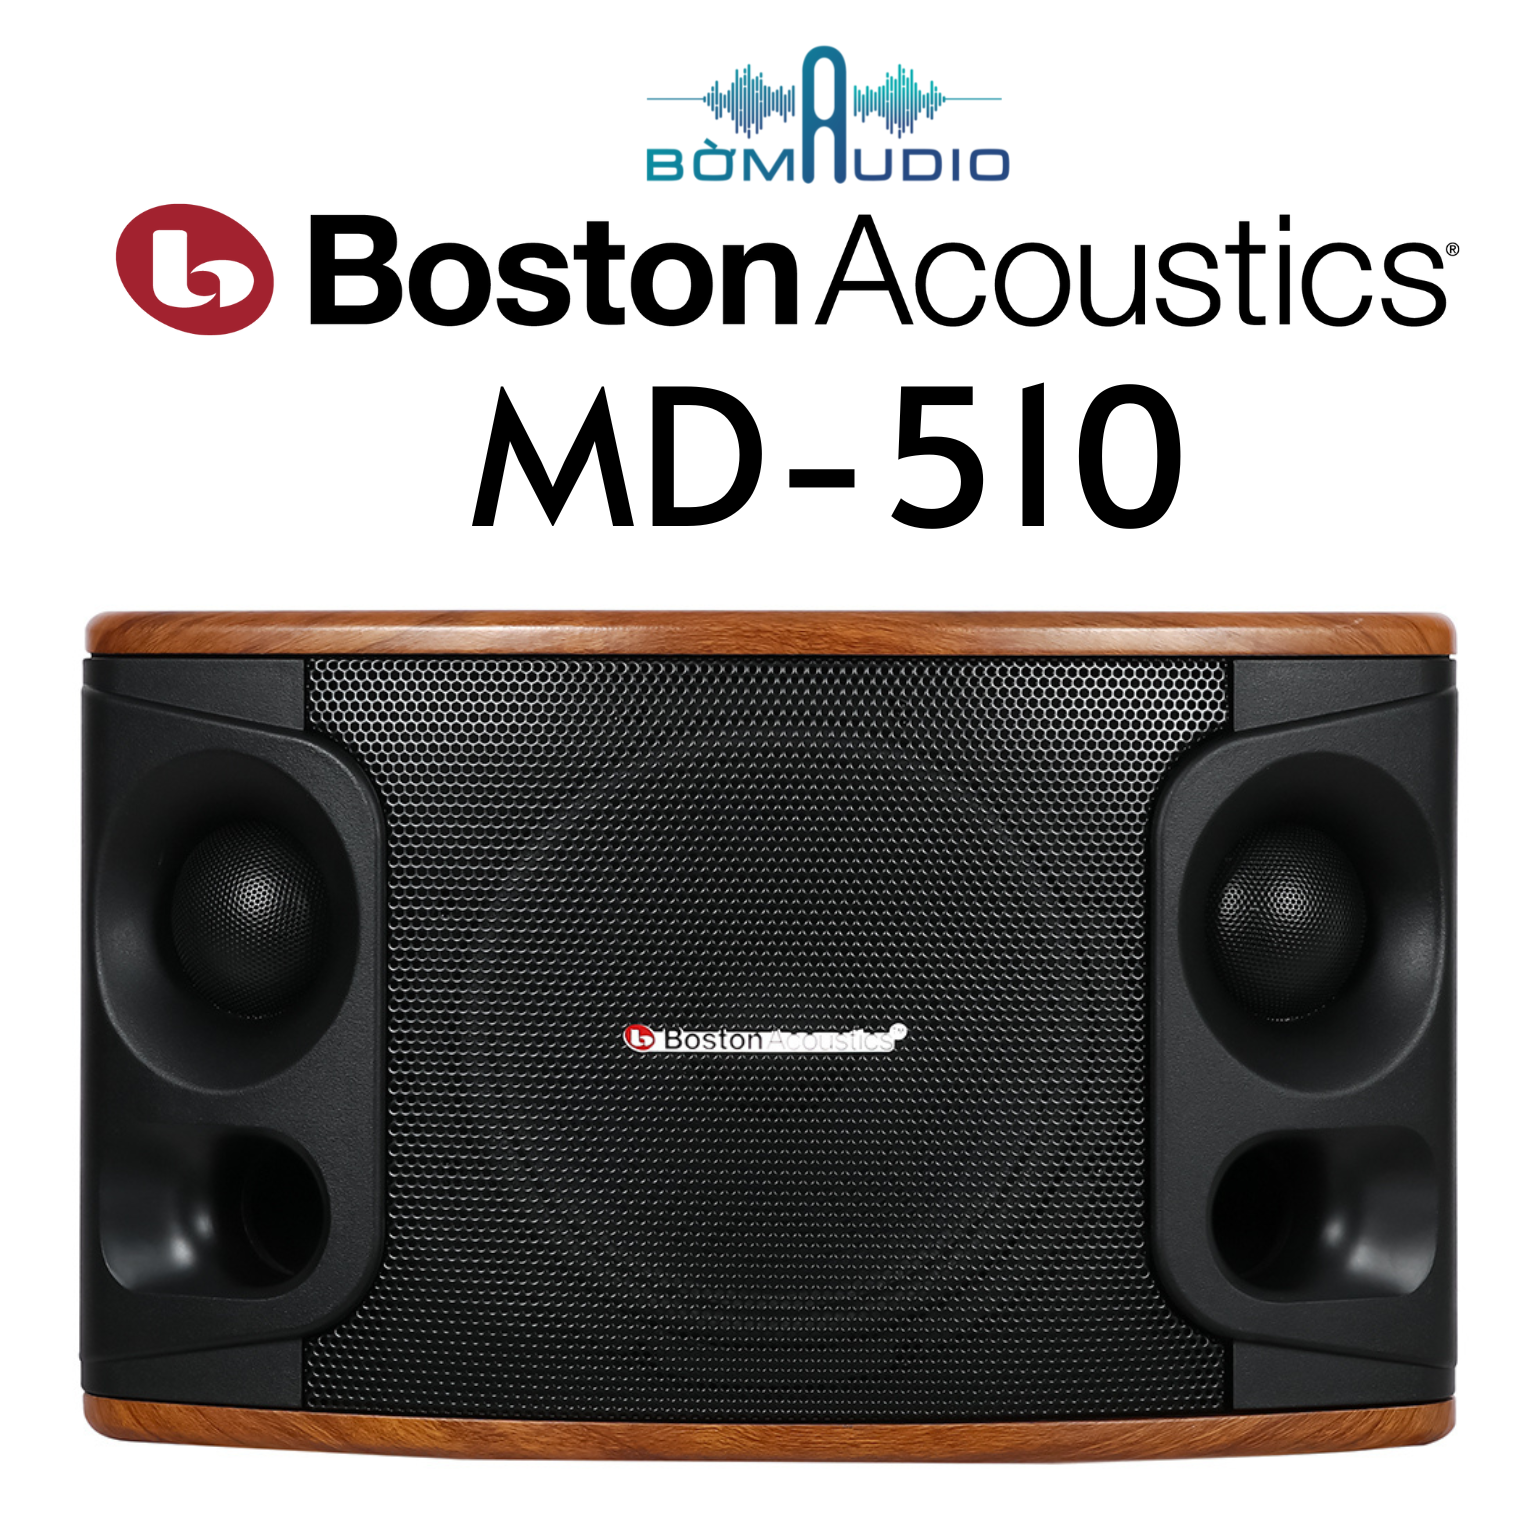 Hàng chính hãng Loa Boston Acoustics MD510 - giá tốt